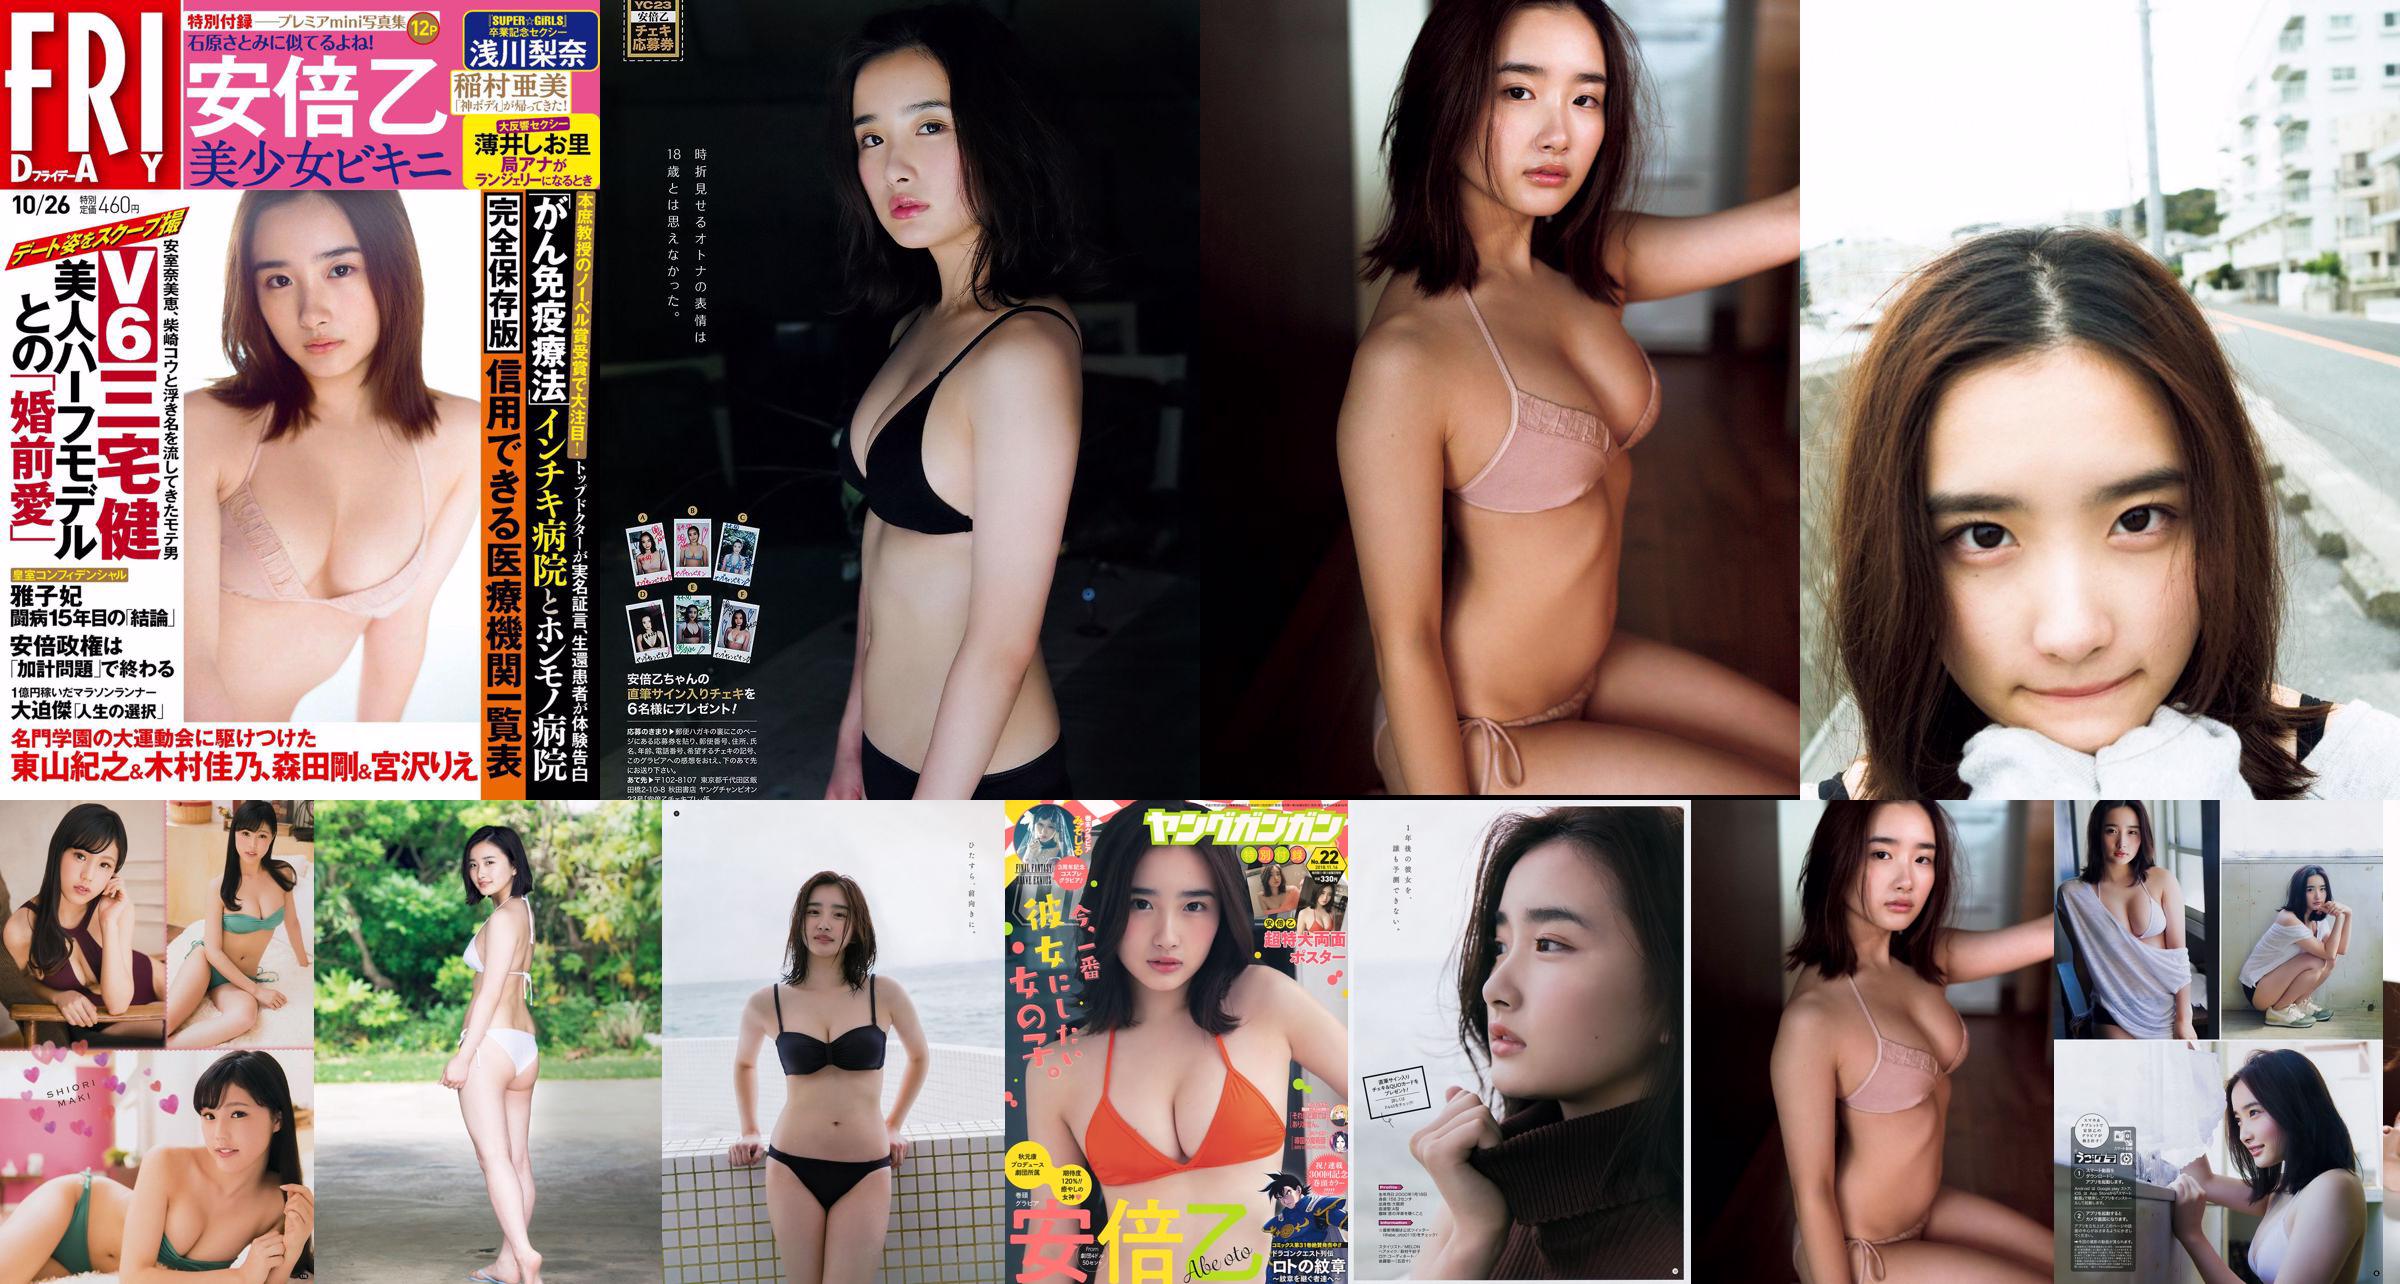 [FRIDAY] Oto Abe "Bishojo Bikini" It looks like Satomi Ishihara "" Photo No.45916a Page 1